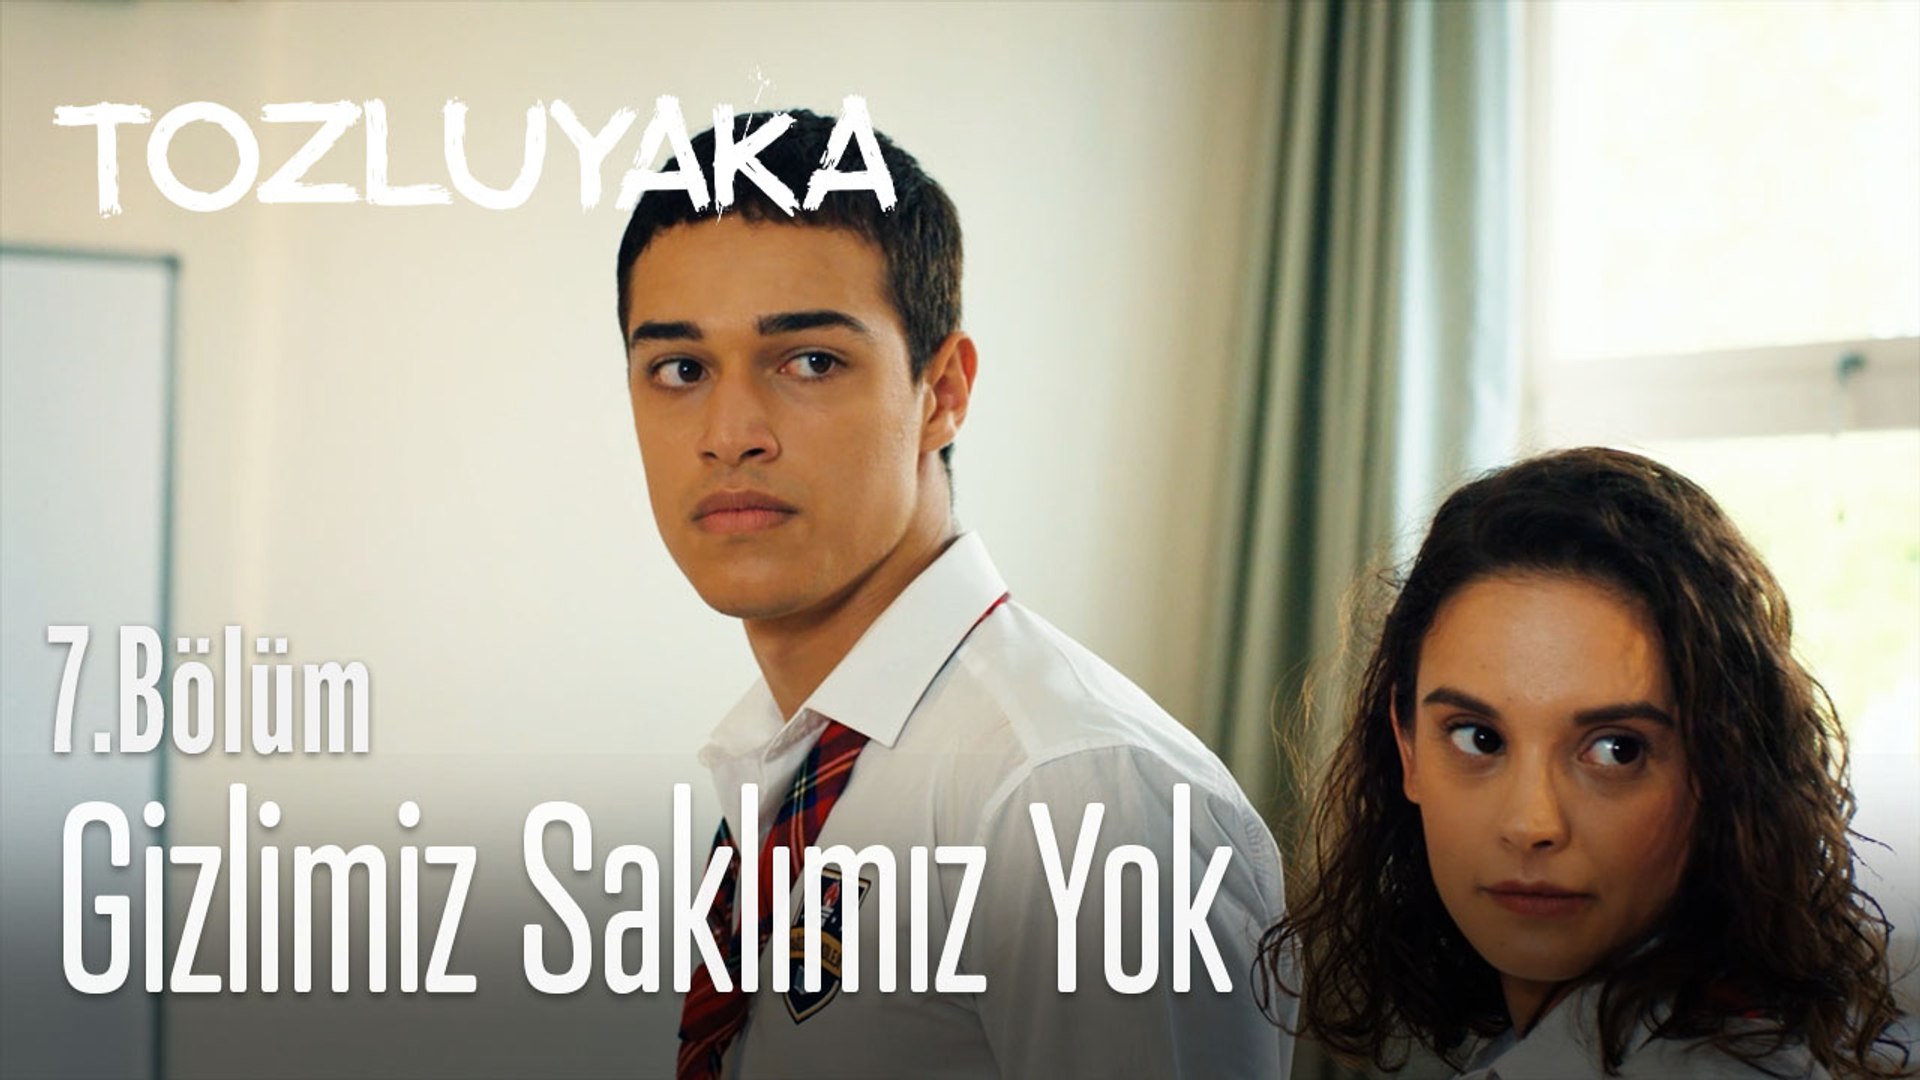 Gizlimiz saklımız yok - Tozluyaka 7. Bölüm - Dailymotion Video